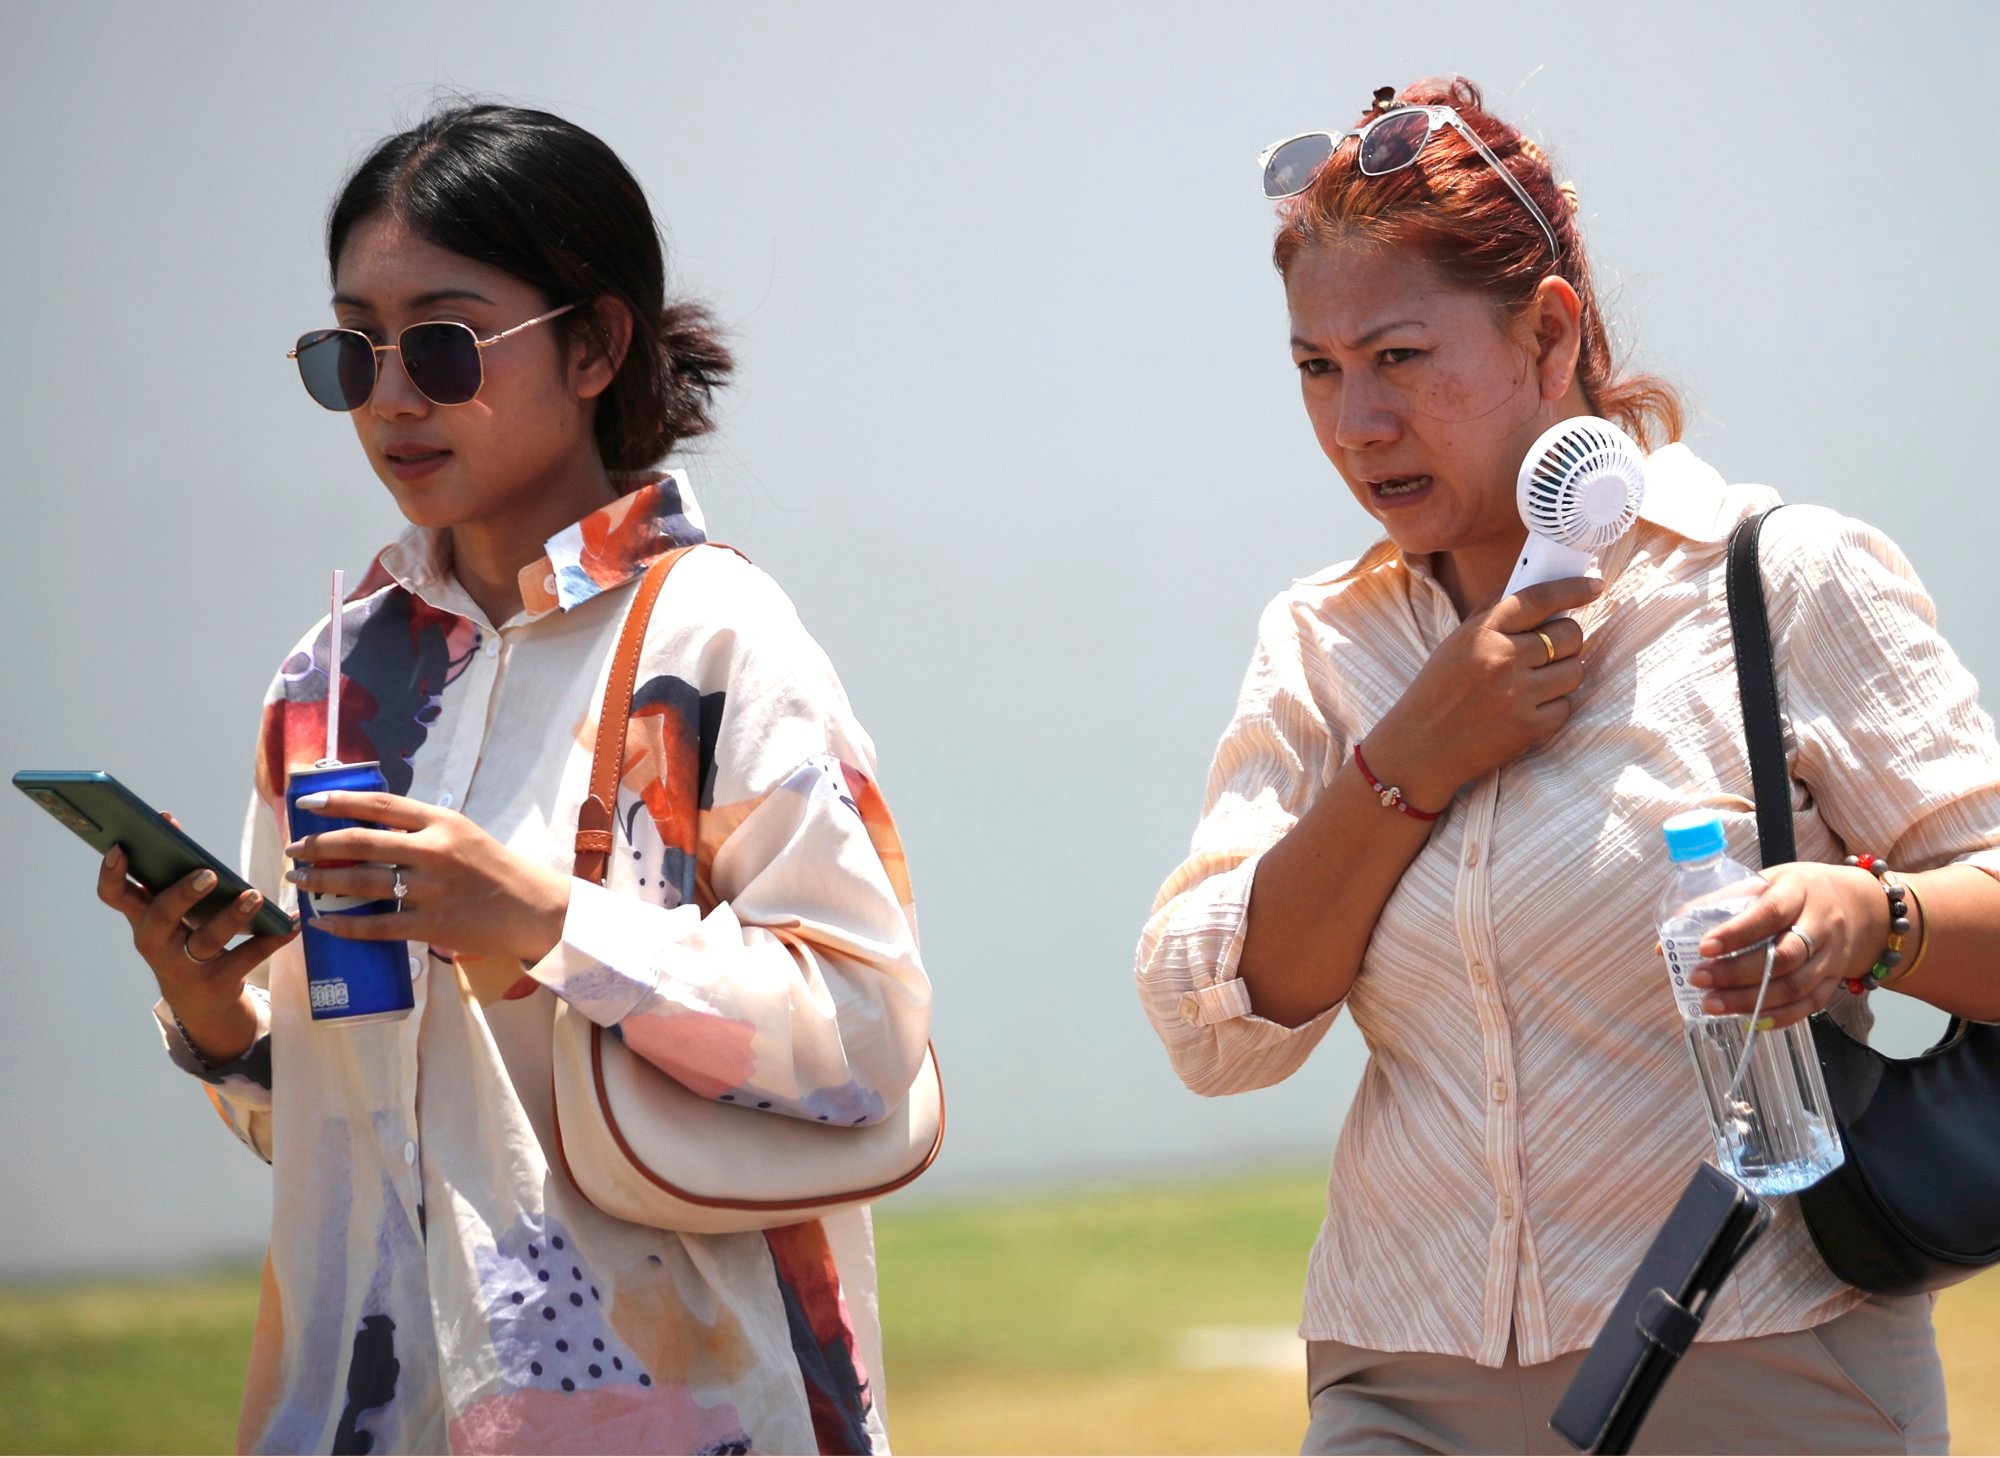 Ondata di caldo nel sud-est asiatico: l’indice di calore in Tailandia supera i 52 gradi poiché le Filippine rischiano di “sovraccaricare” i sistemi energetici.